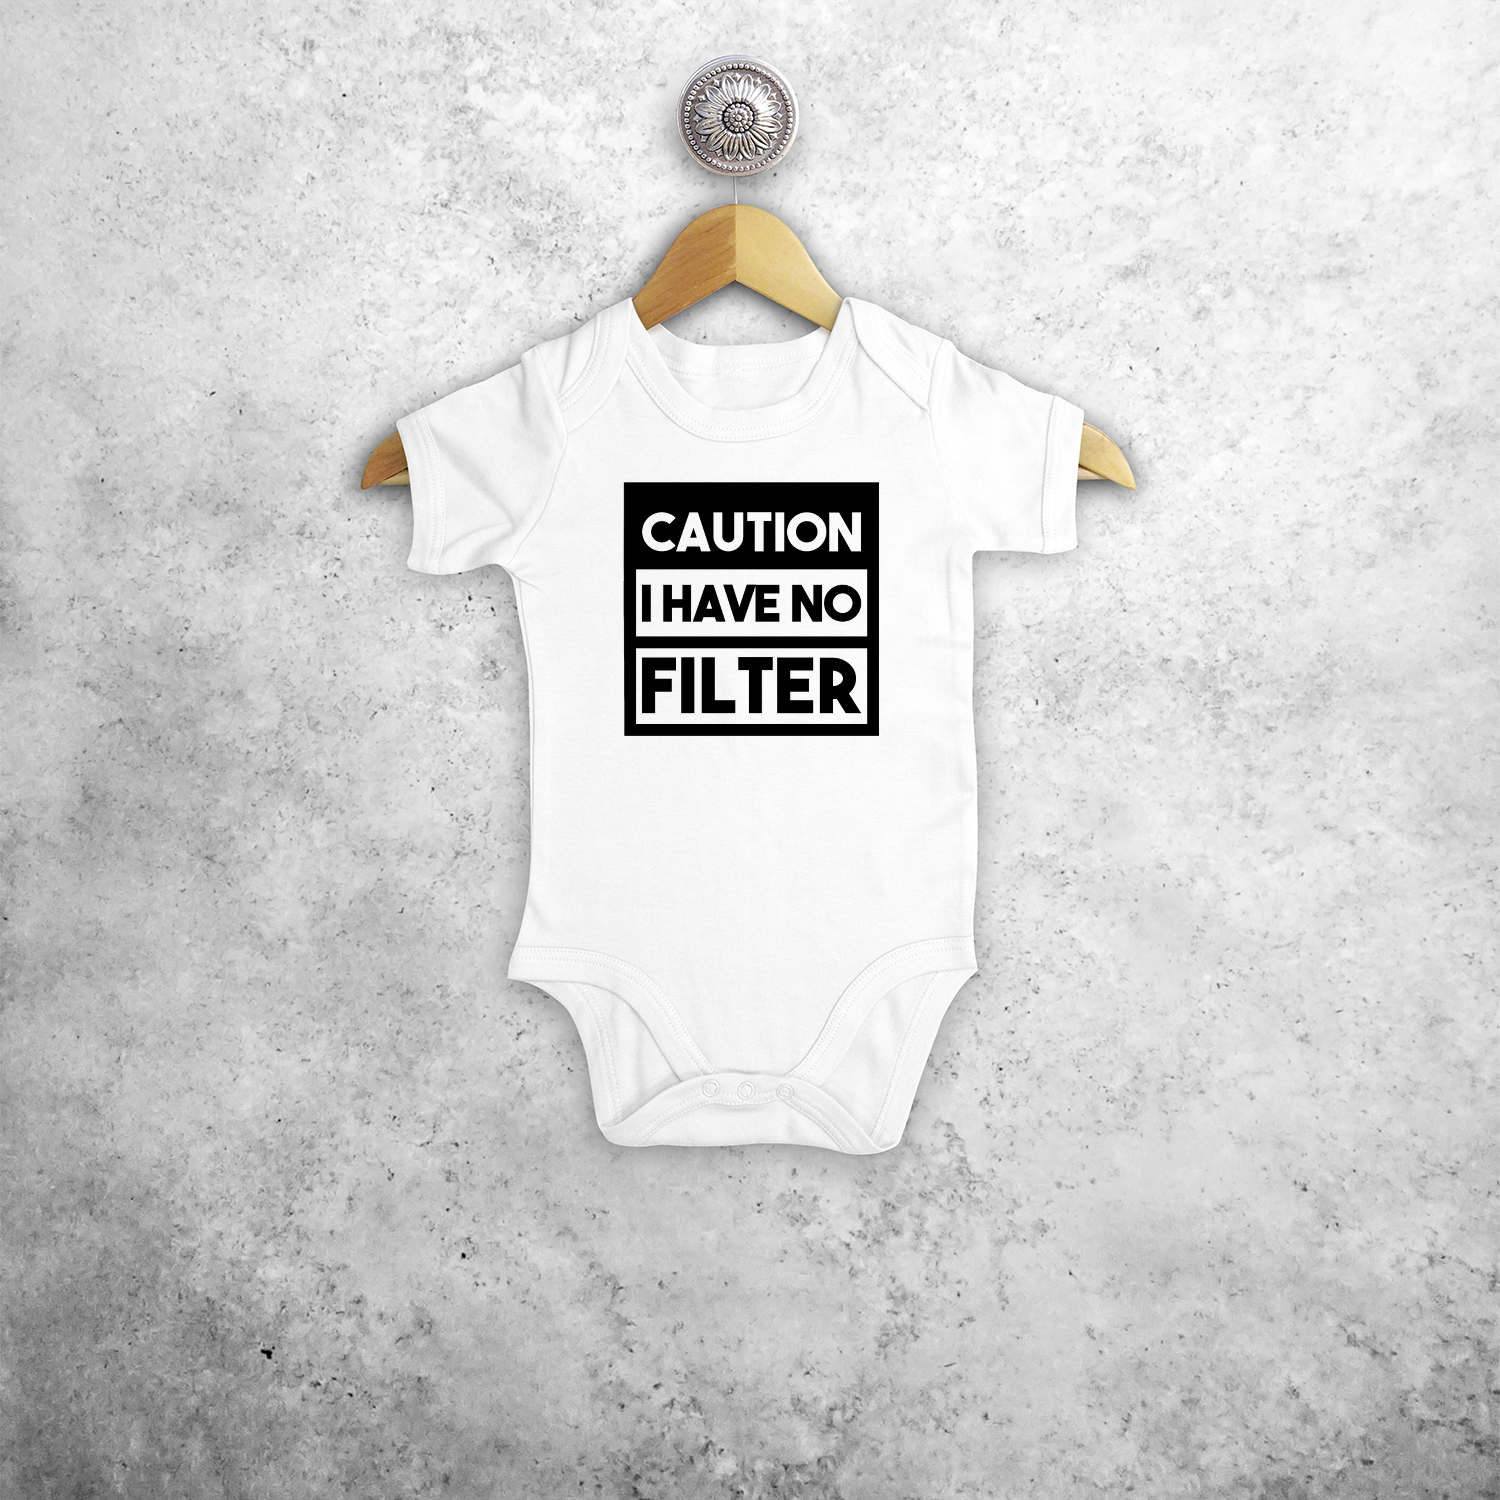 Caution: I have no filter' baby kruippakje met korte mouwen